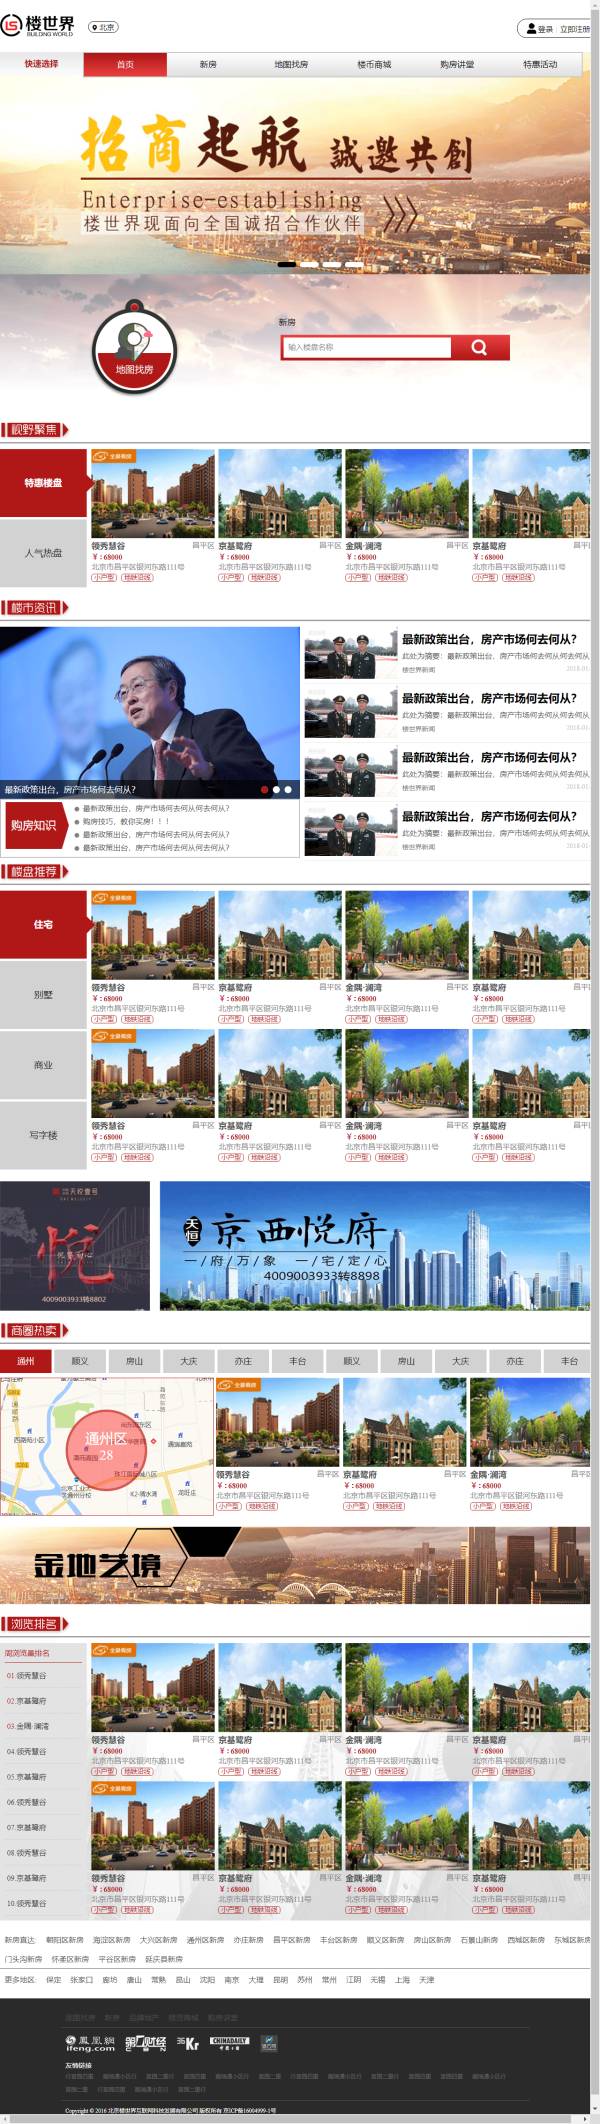 红色系销售楼盘资讯网页模板html整站